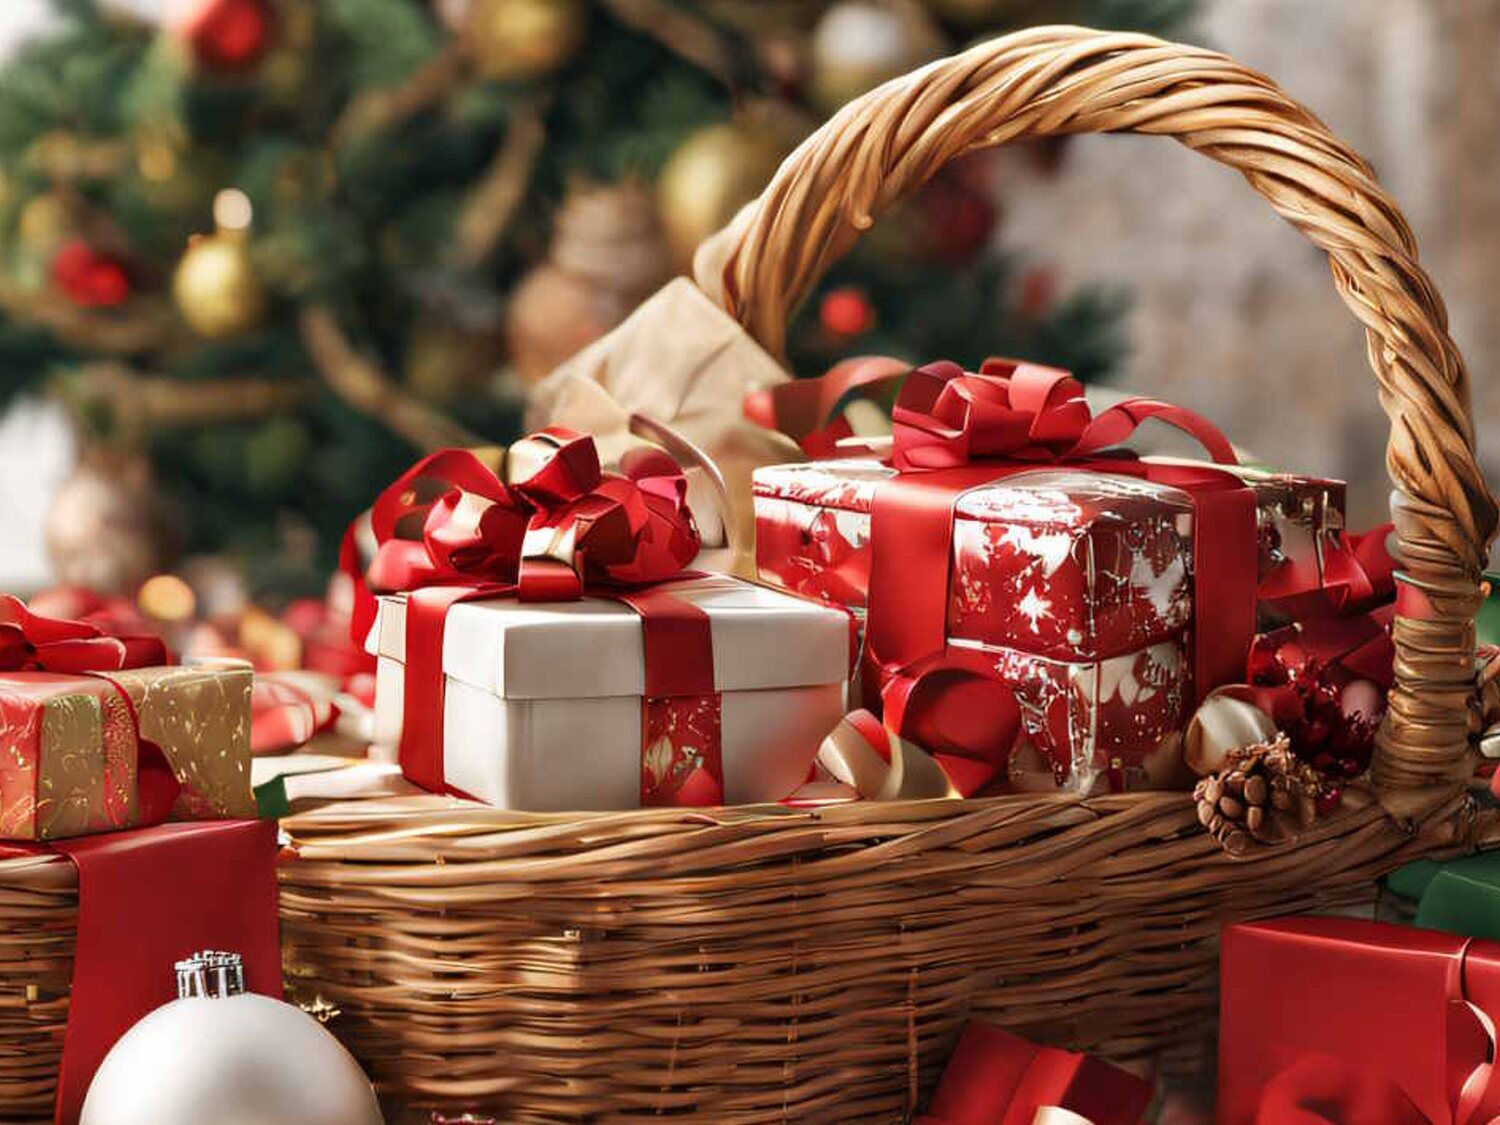 La cesta de Navidad más cara de España, valorada en 750.000 euros: cómo conseguirla